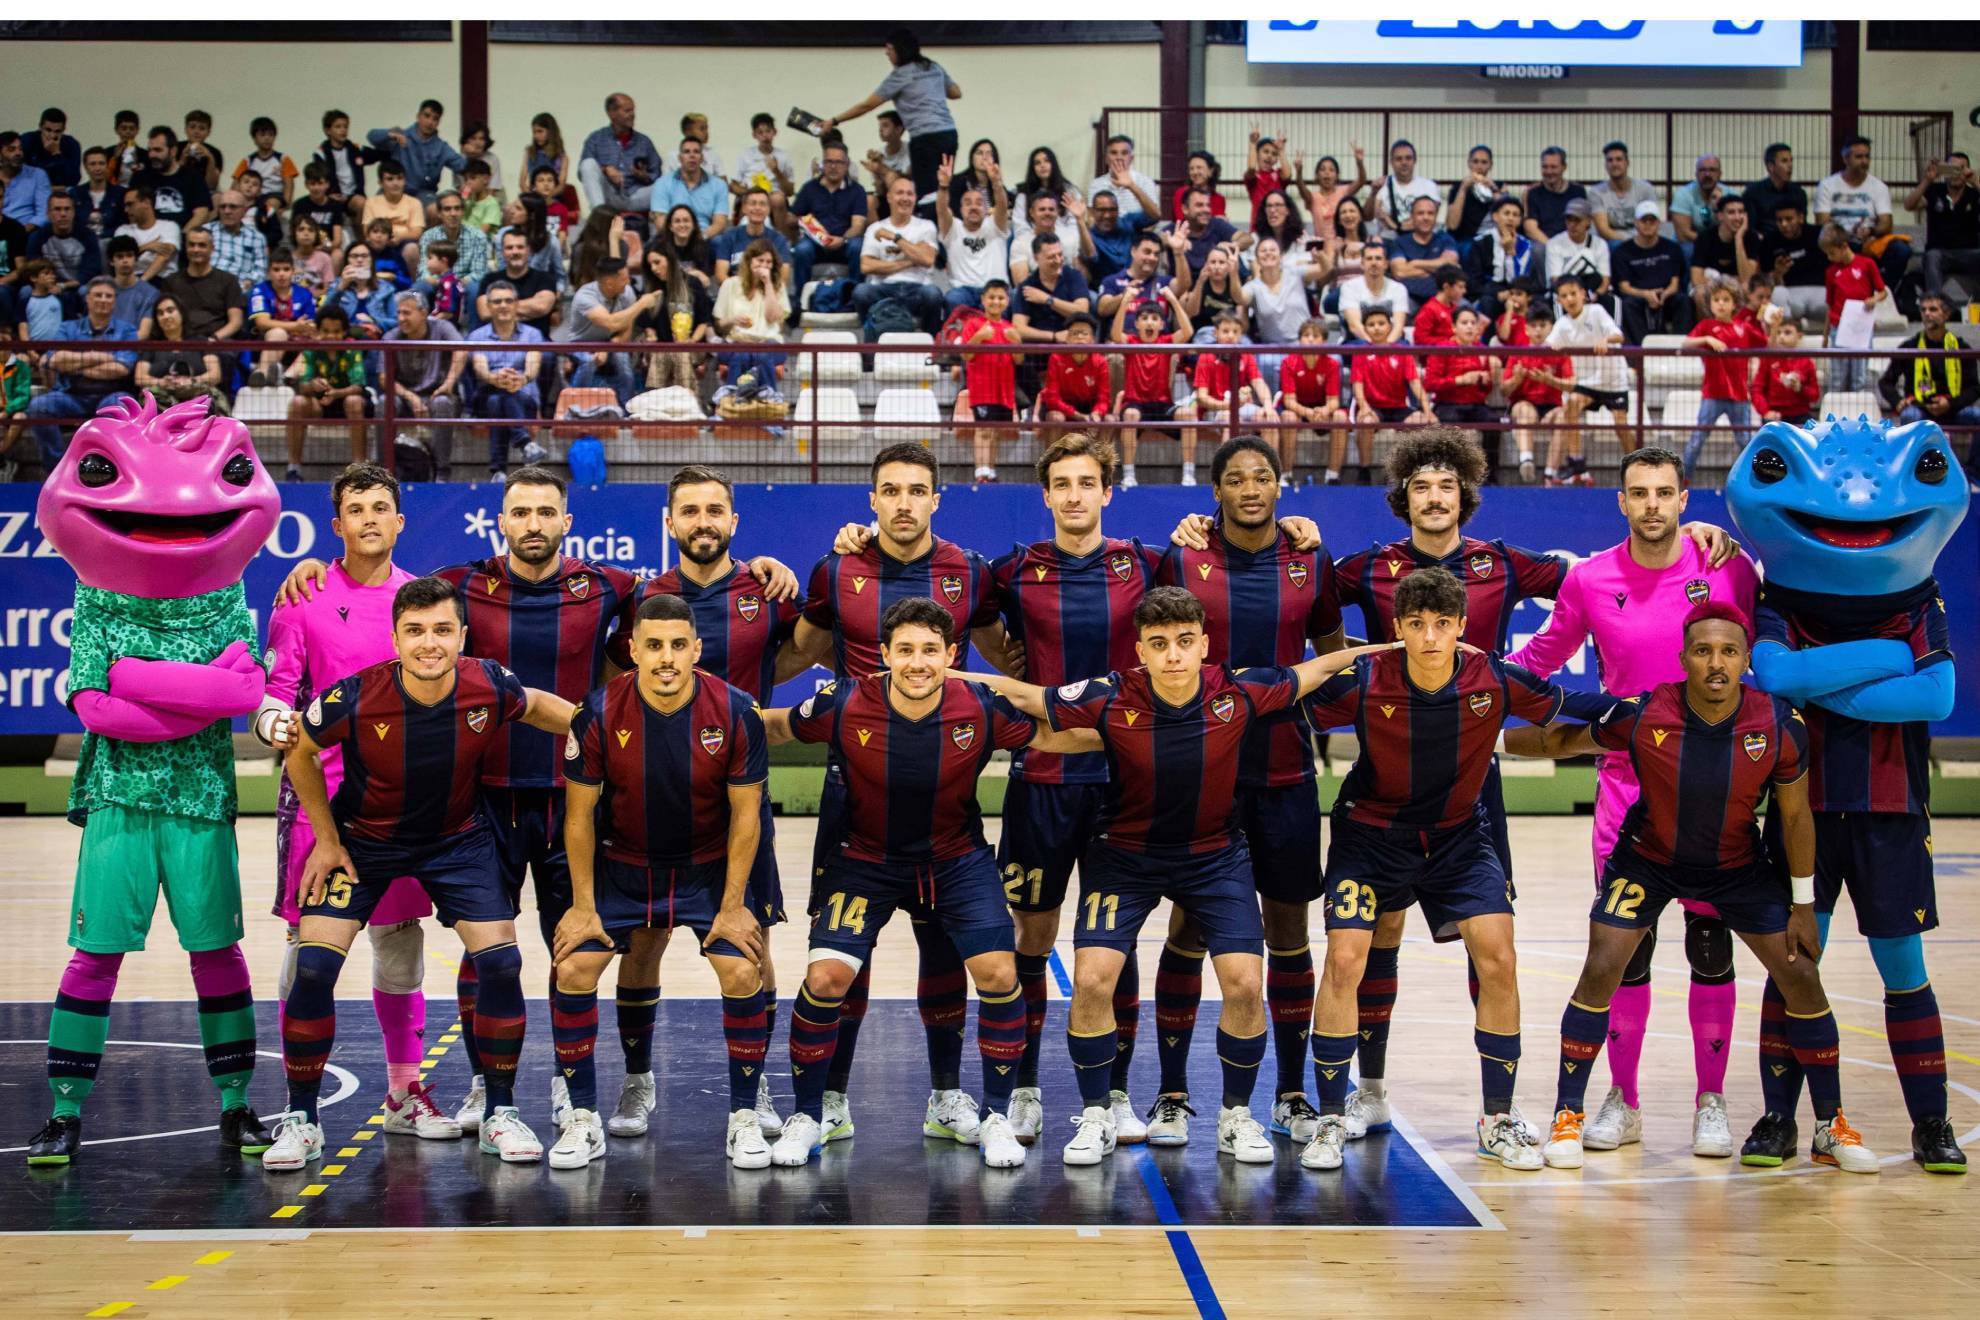 Formación de lLevante U.D. que se enfrentó al BeSoccer UMA Antequera en el, de momento, último partido de los granotas en Primera Federación Futsal